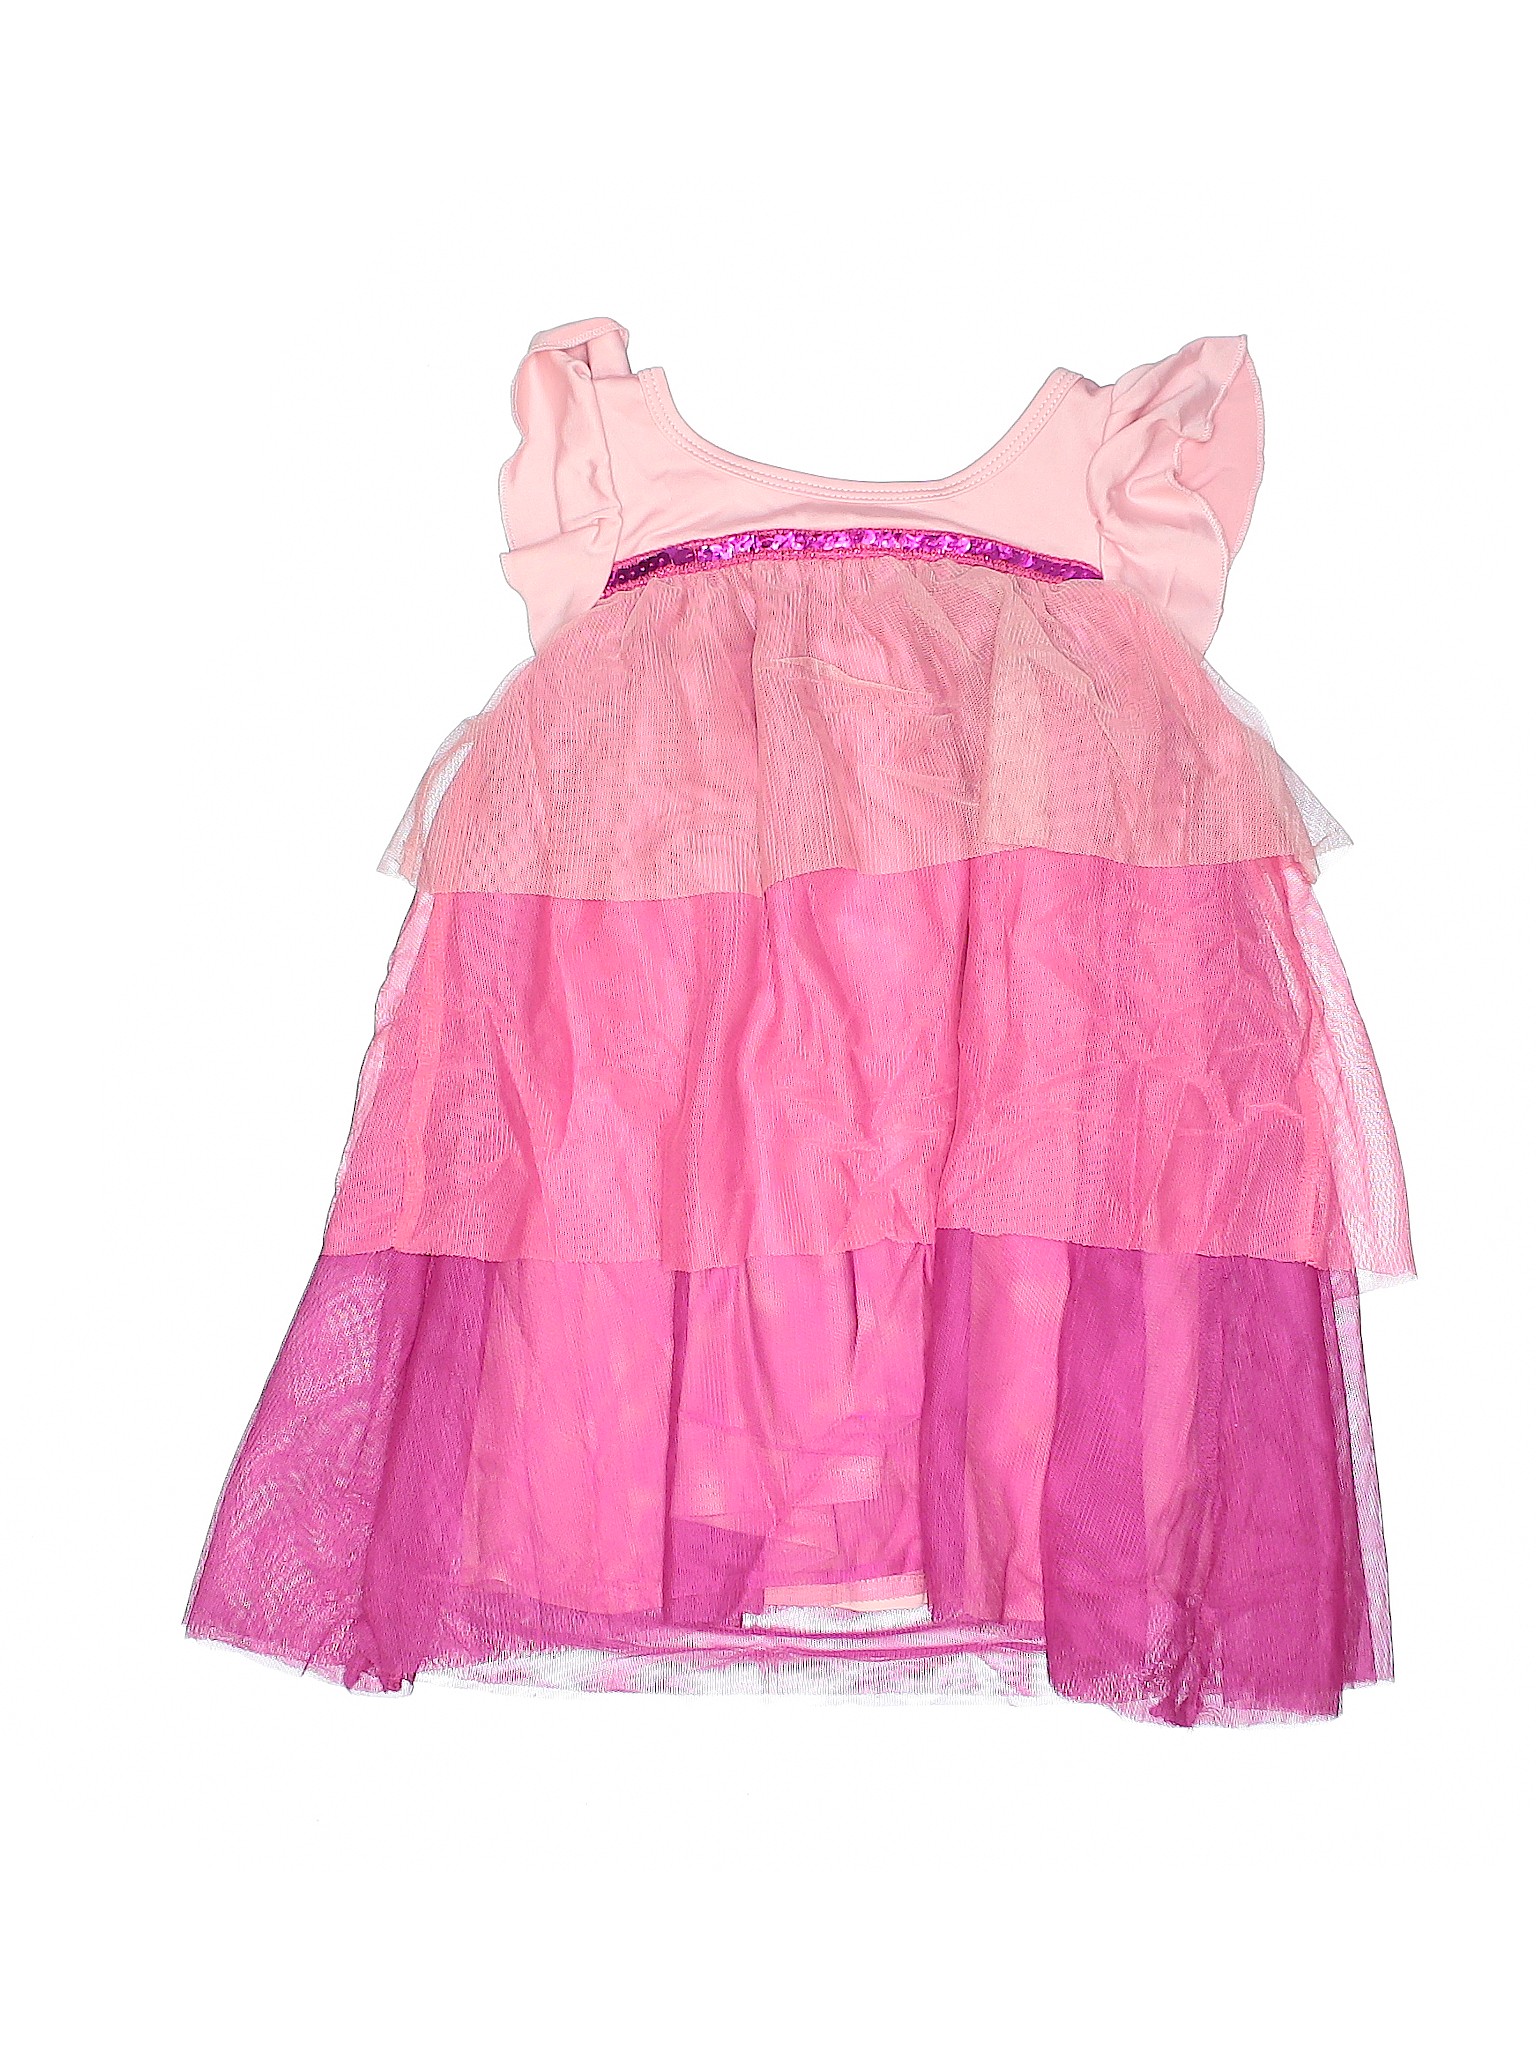 Dot Dot Smile Pink Dress Size 7 - 58% off | thredUP